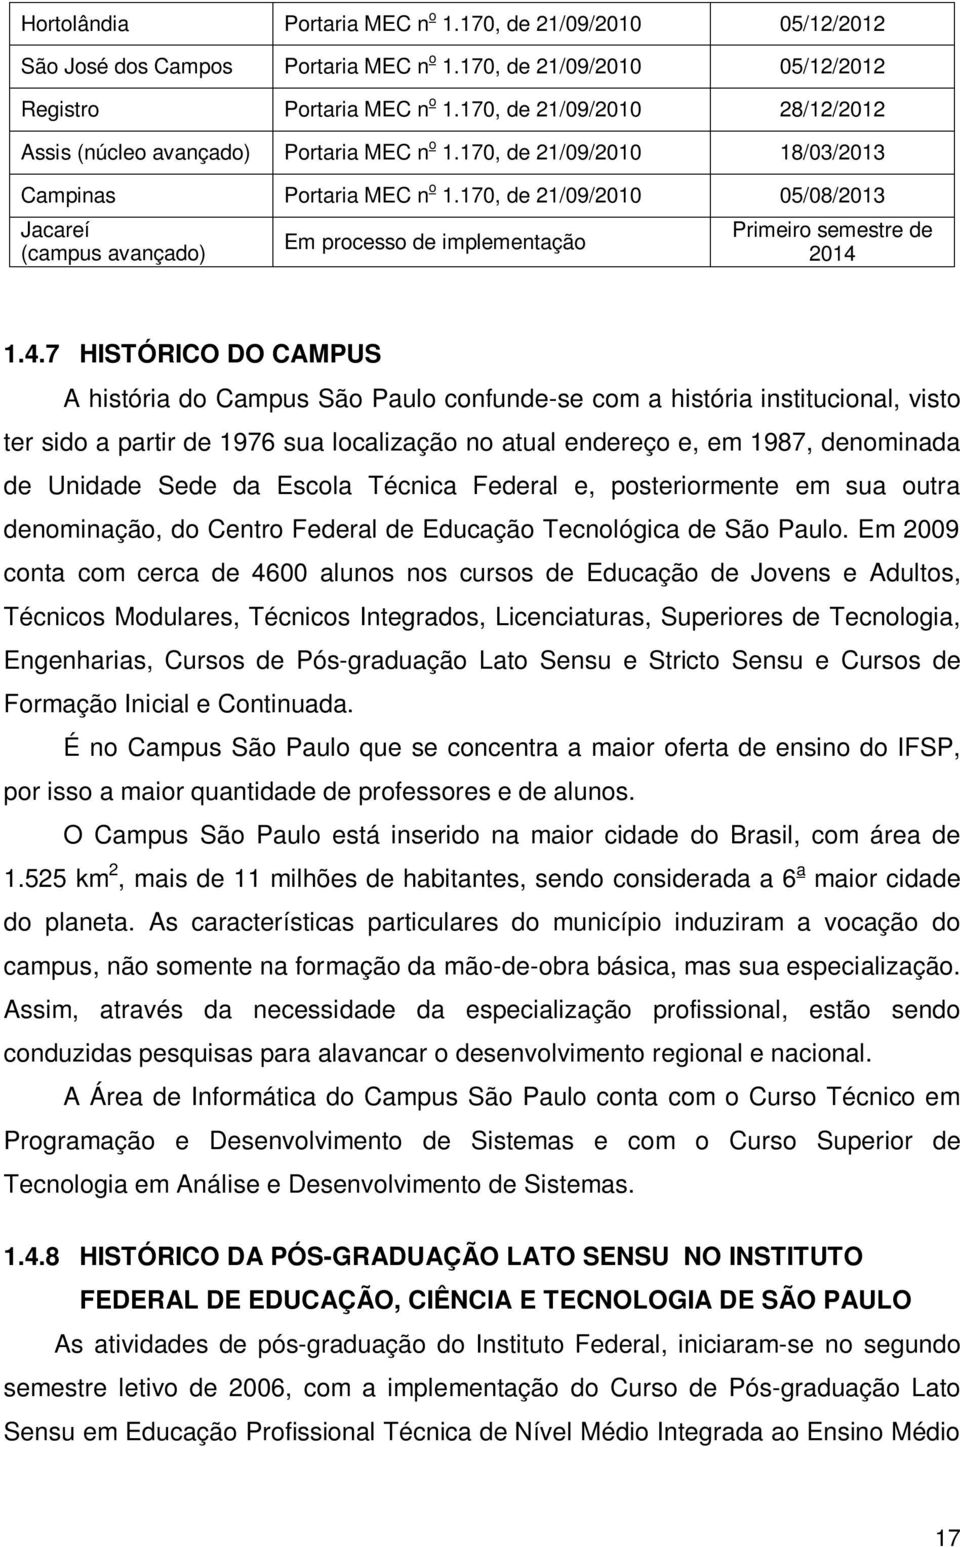 170, de 21/09/2010 05/08/2013 Jacareí (campus avançado) Em processo de implementação Primeiro semestre de 2014 